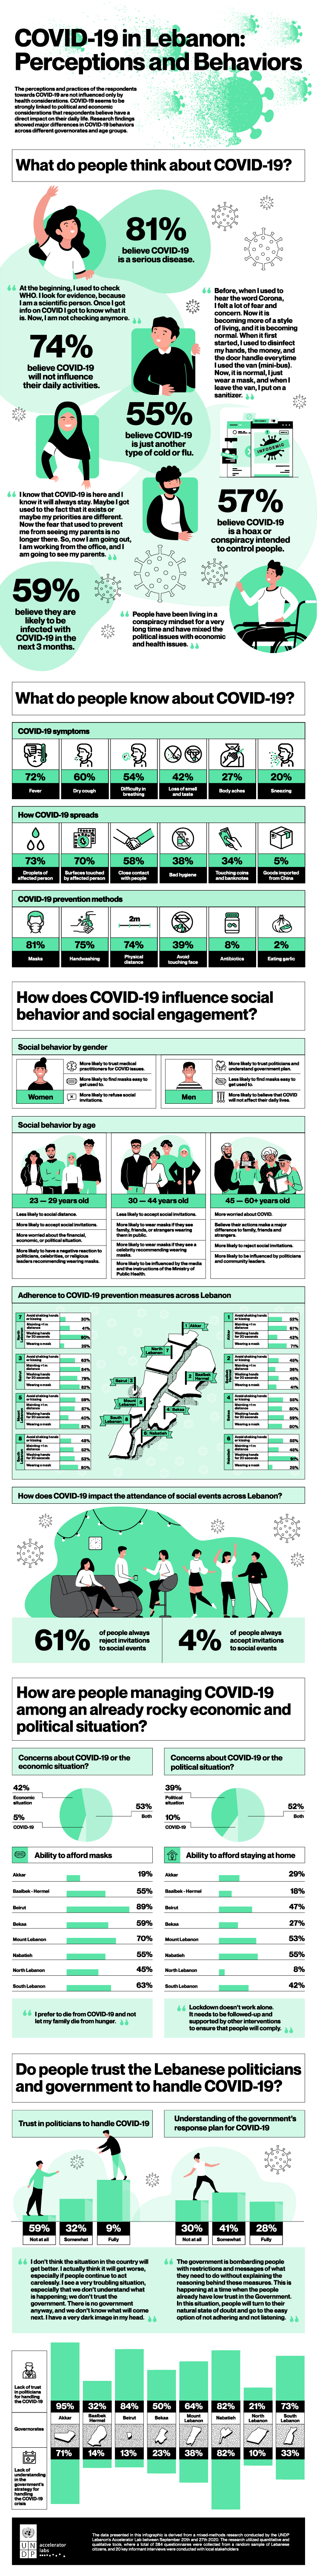 UNDP covid 19 in lebanon perceptions and behaviors@2x